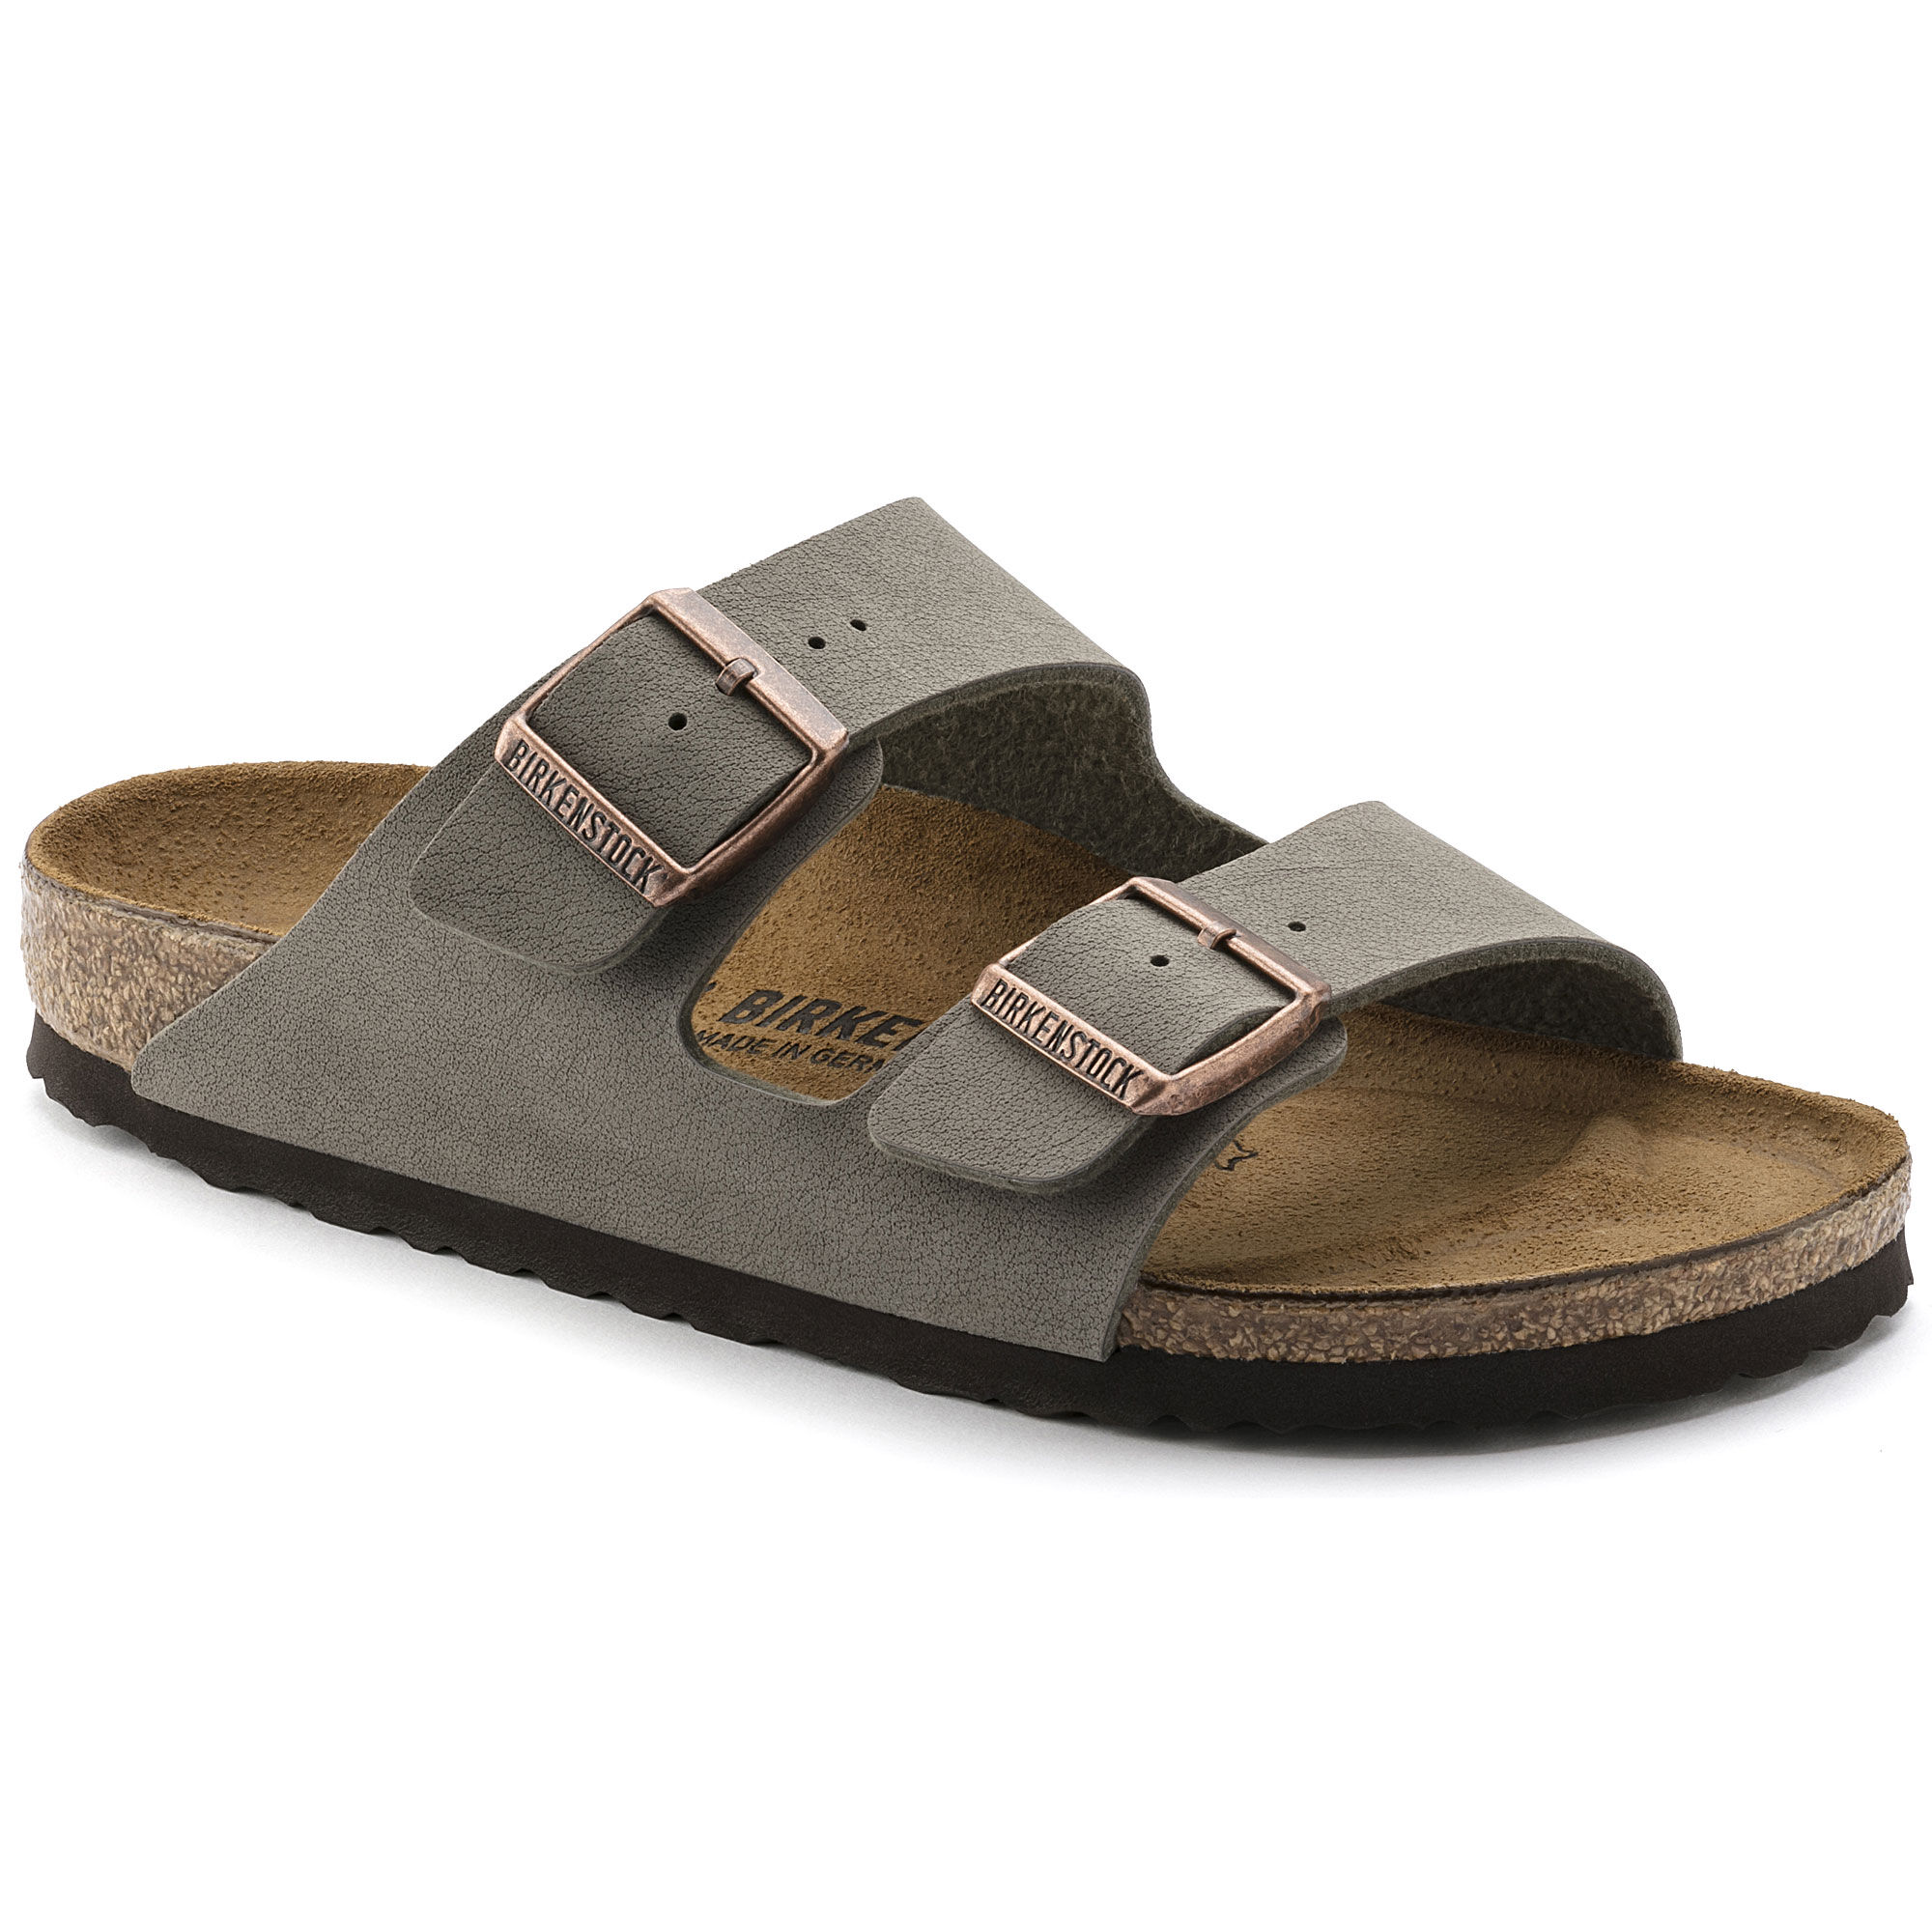 birkenstock sandals mens size 11